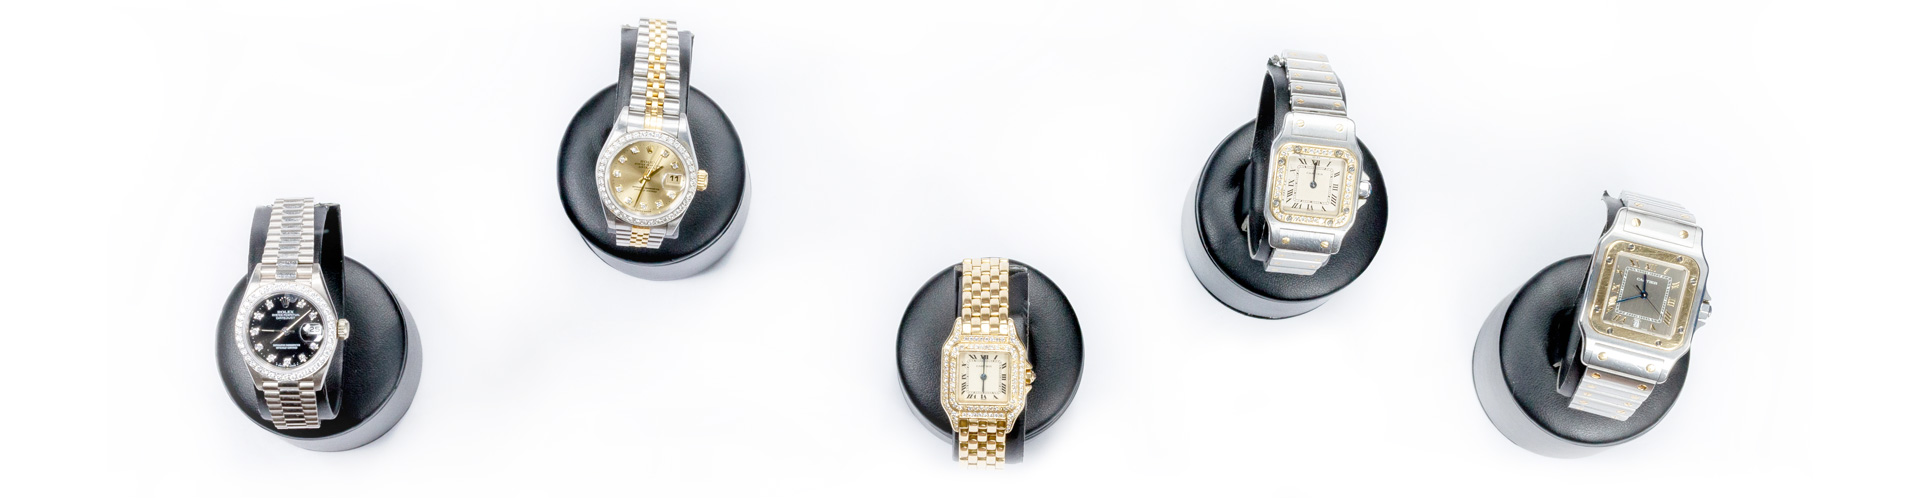 5 hochwertige Uhren, unter anderem der Marke Rolex, mit Diamanten besetzt